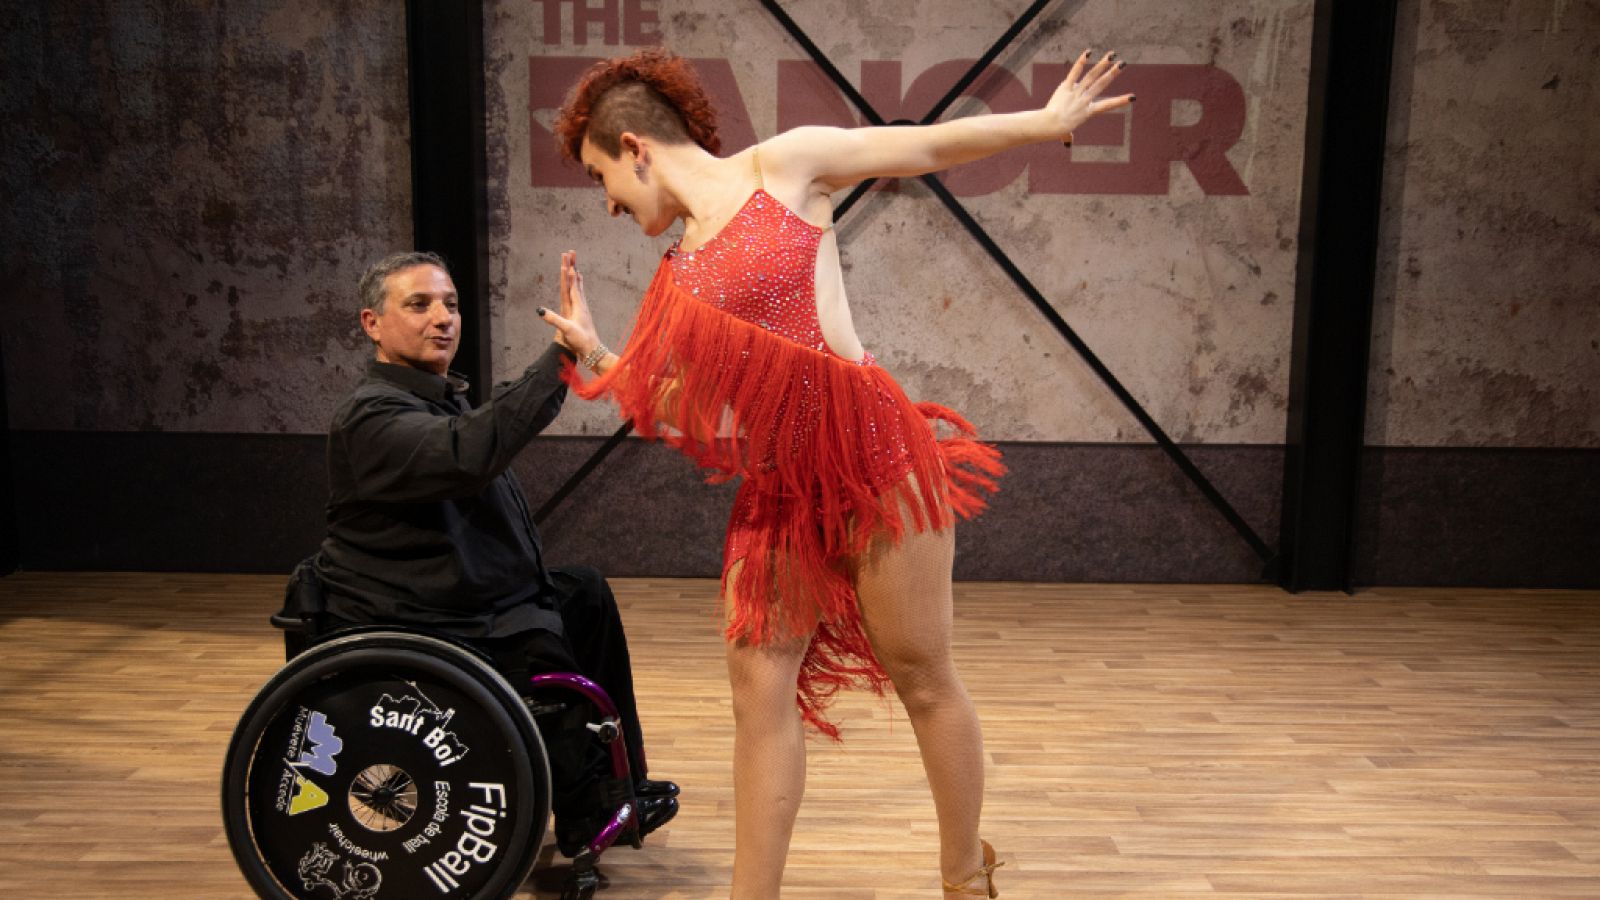 The Dancer - Alegato y actuación de Ángel y Sara